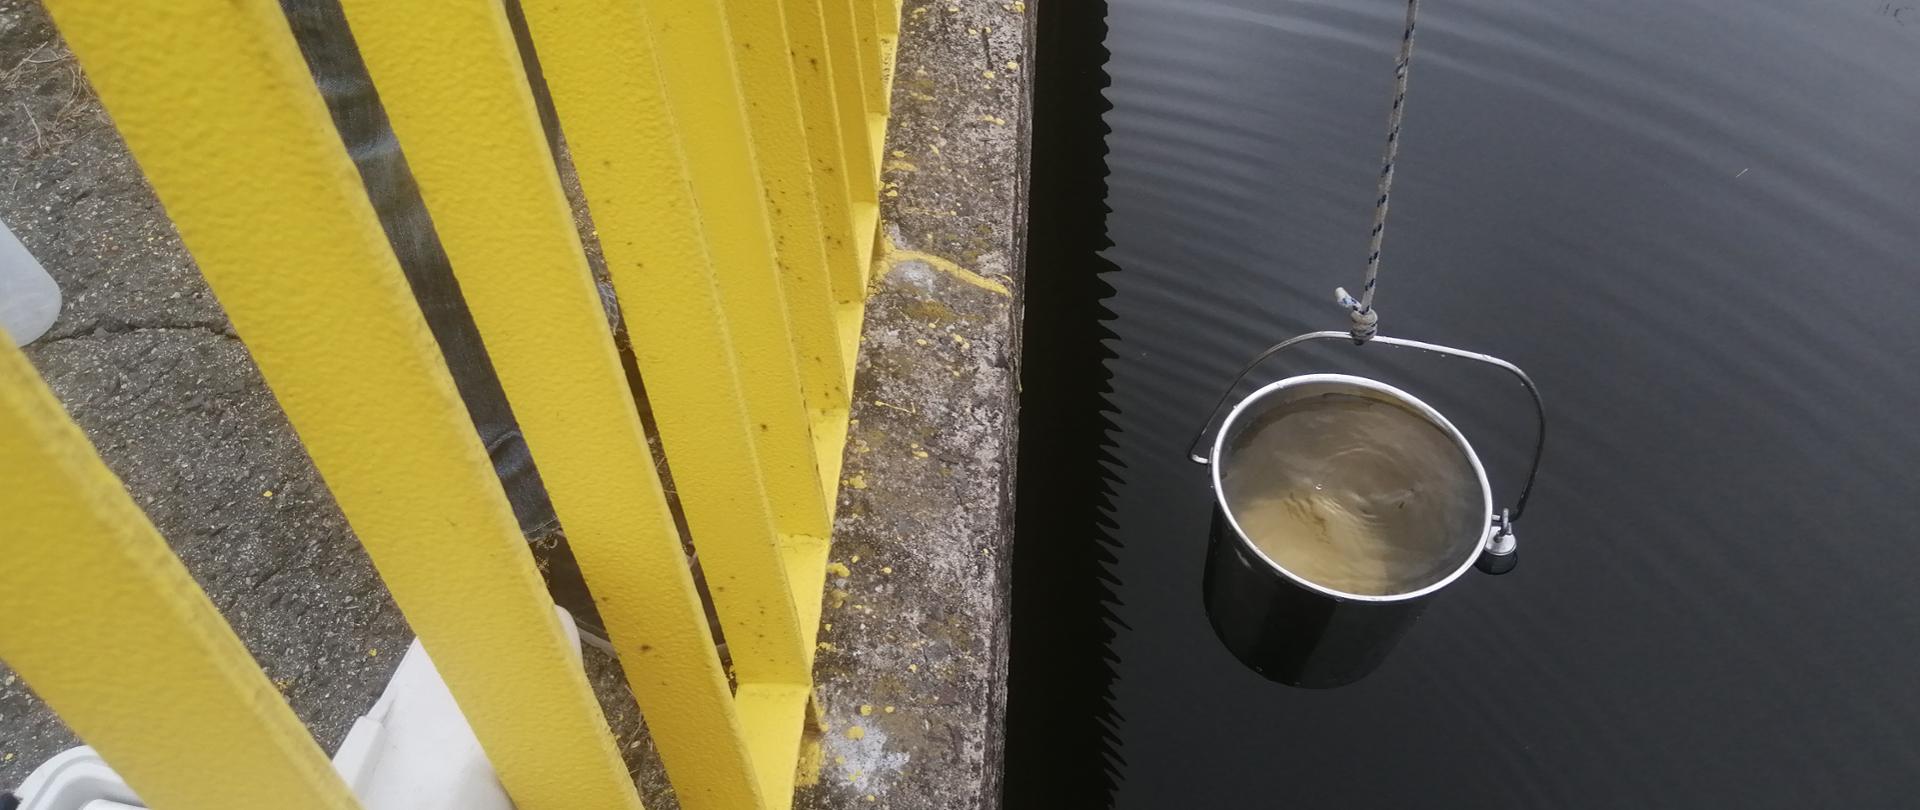 Wiadro z wodą na tle rzeki, obok barierka mostu i sprzęt pomiarowy